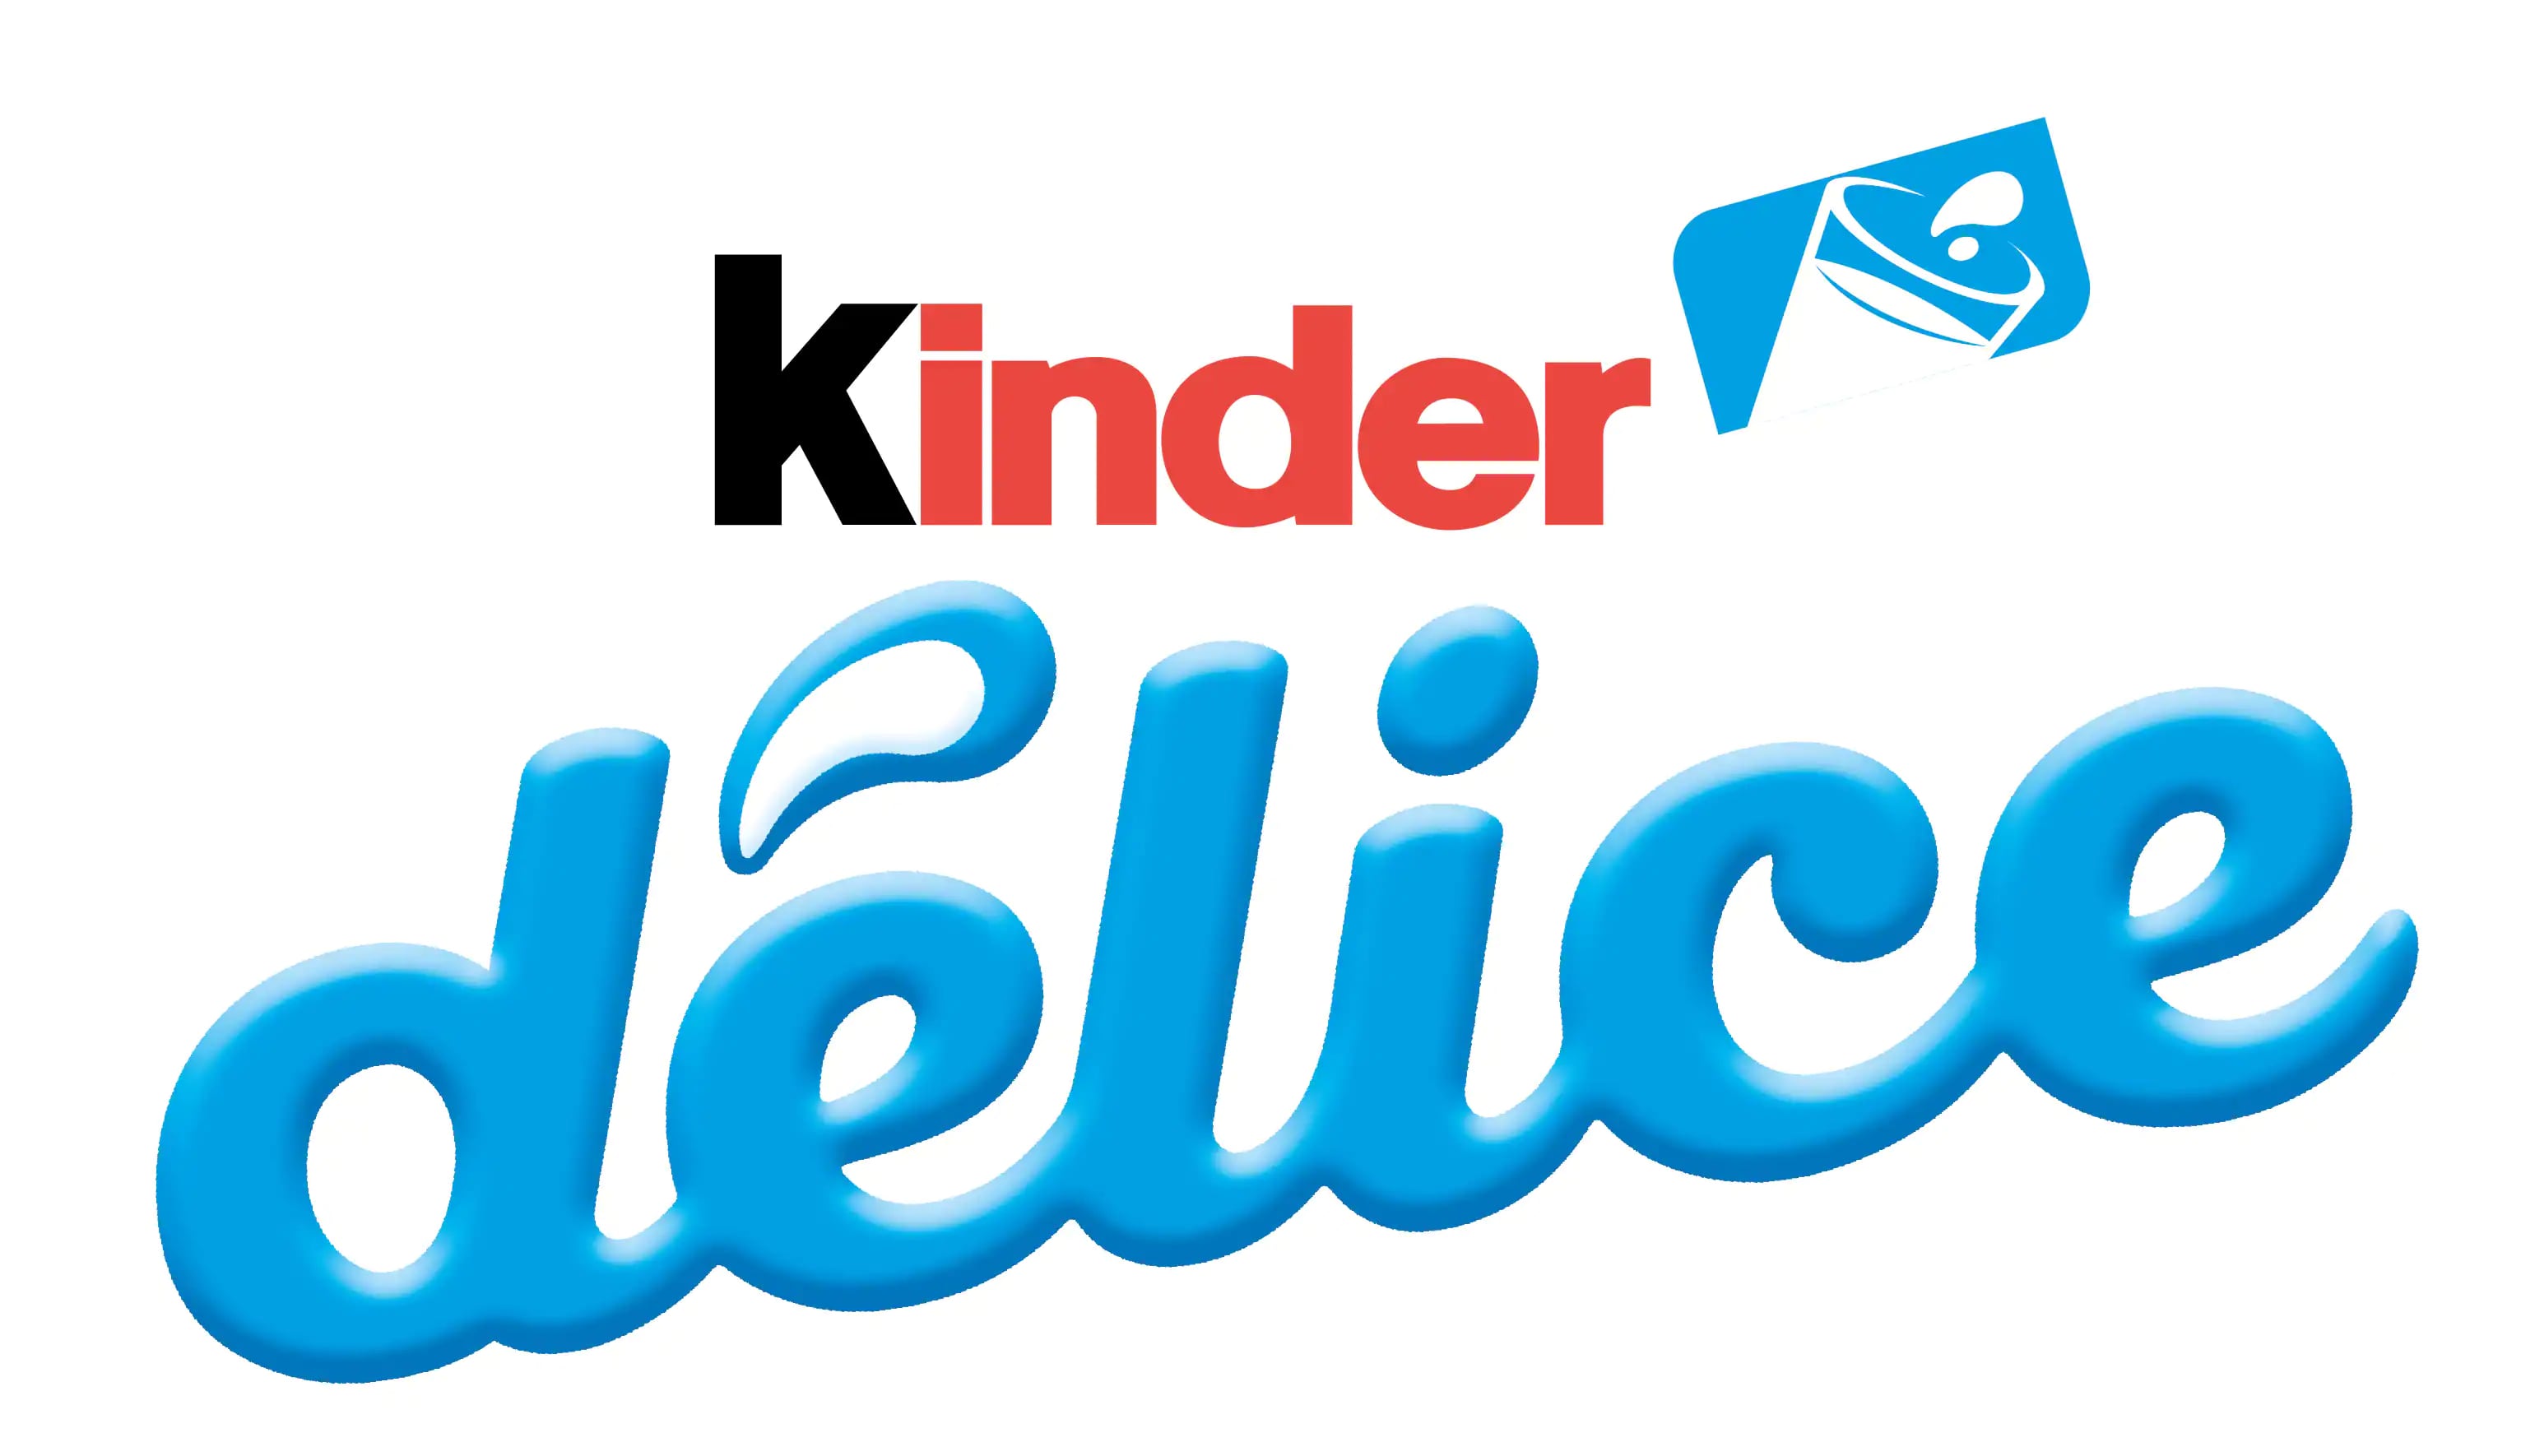 kinder delice logo